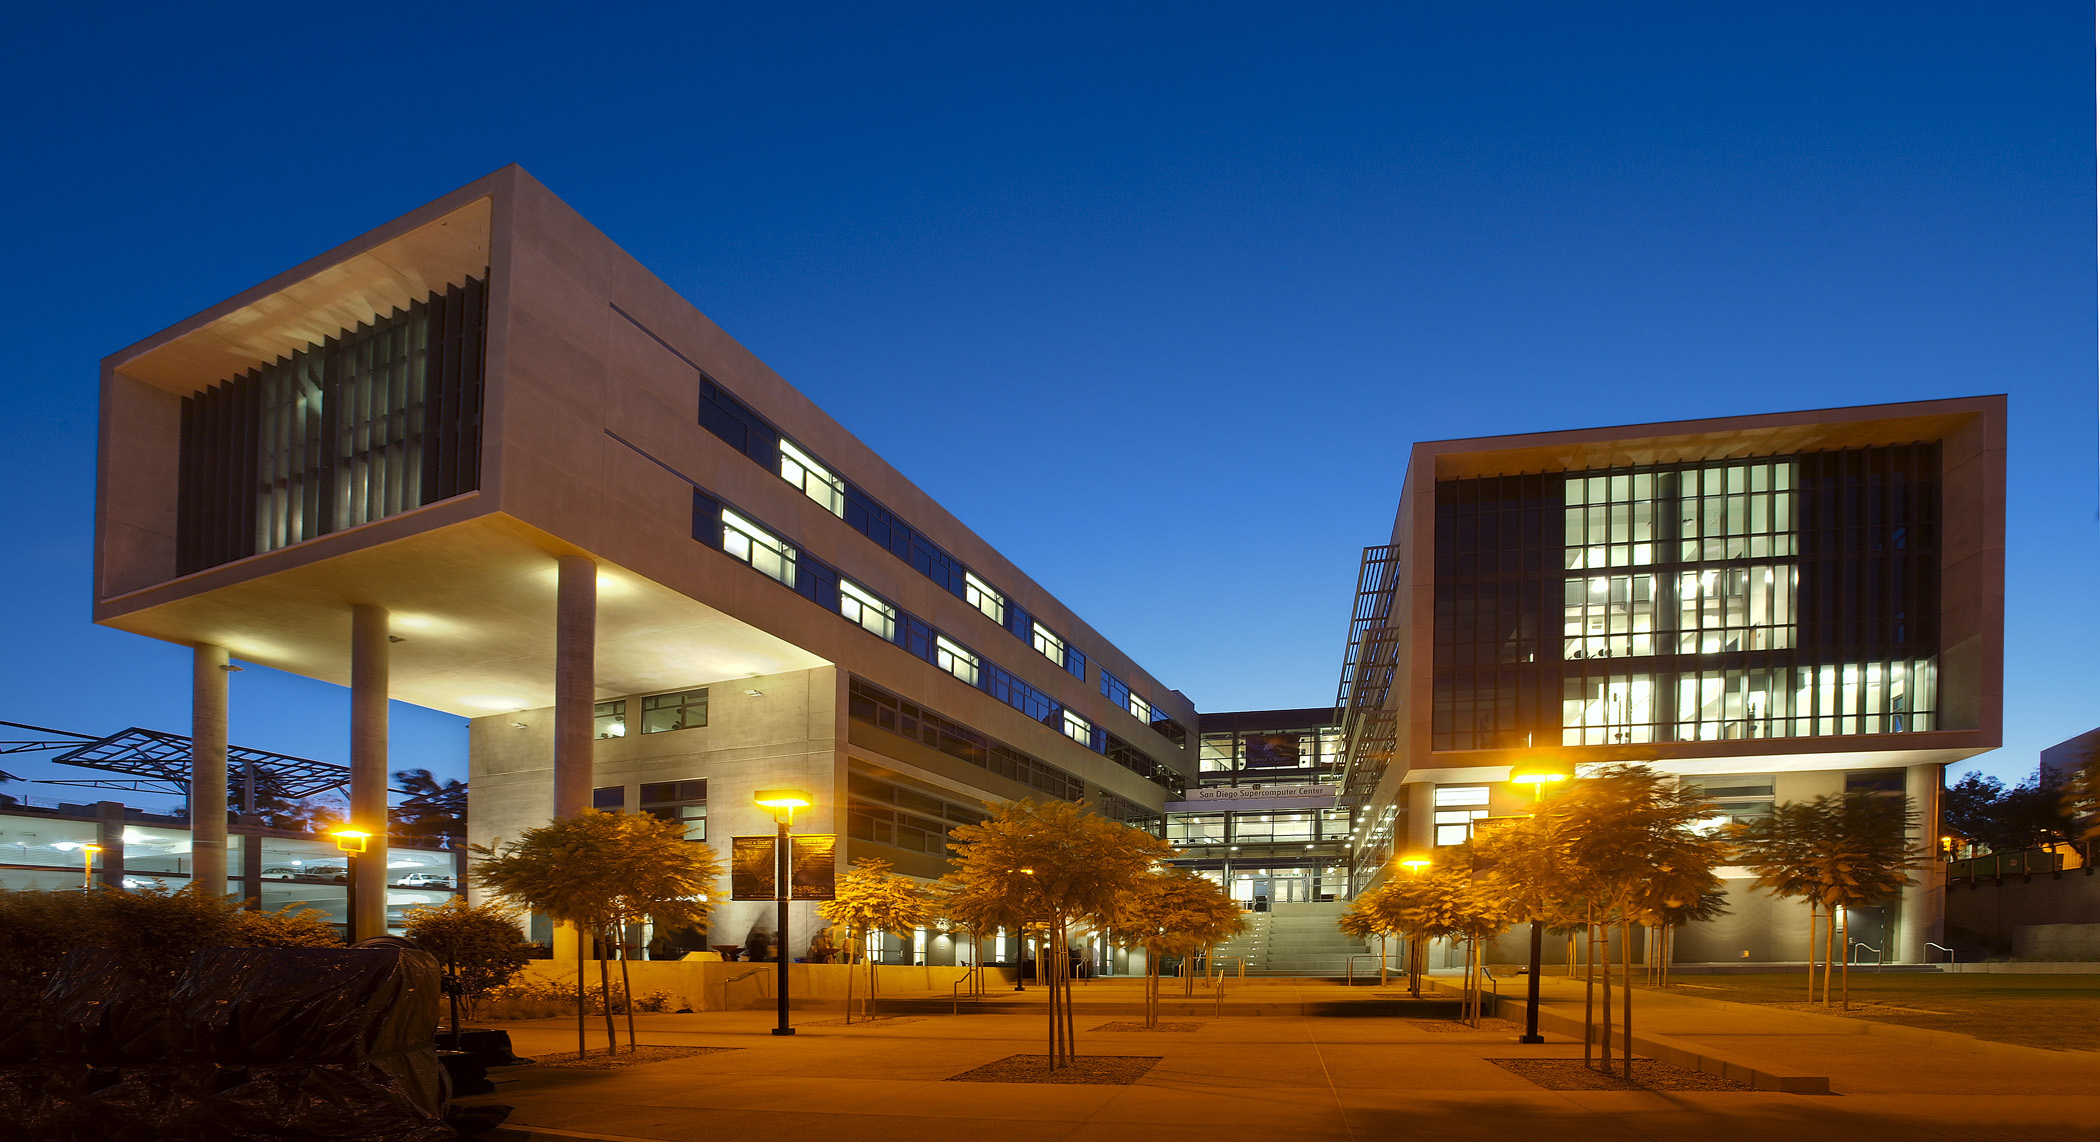 San Diego Supercomputer Center